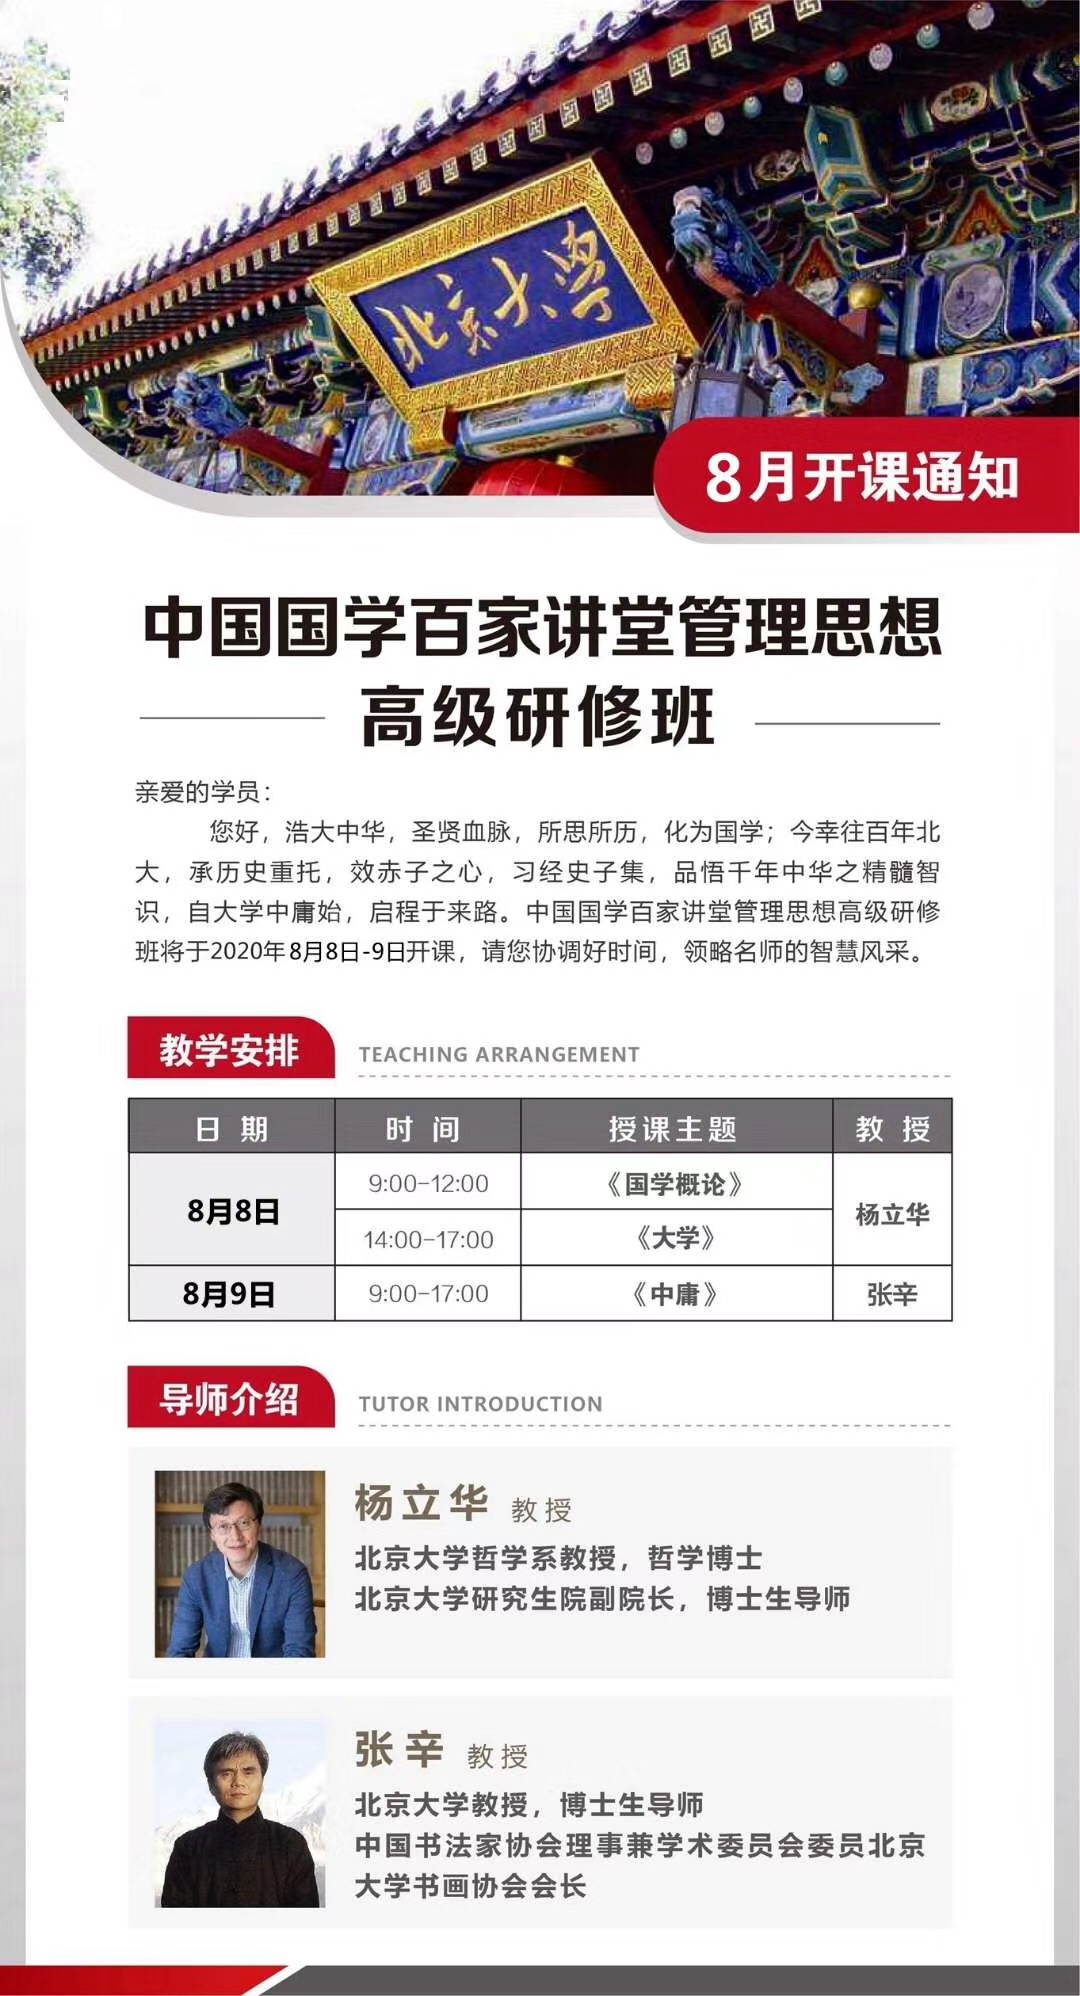 中国国学百家讲堂管理思想高级研修班2020年8月开课通知